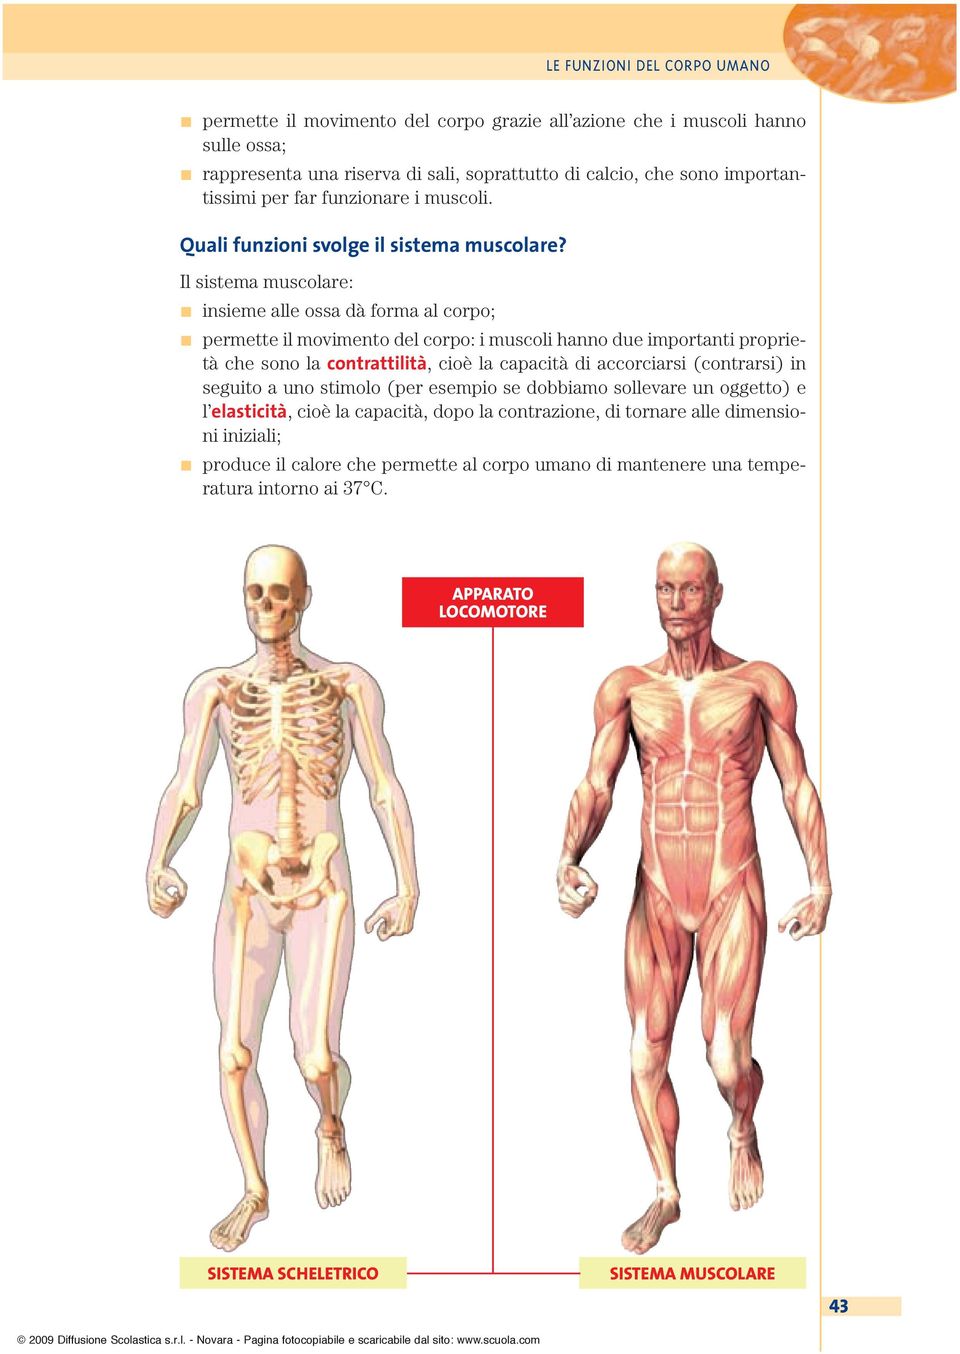 Il sistema muscolare: insieme alle ossa dà forma al corpo; permette il movimento del corpo: i muscoli hanno due importanti proprietà che sono la contrattilità, cioè la capacità di